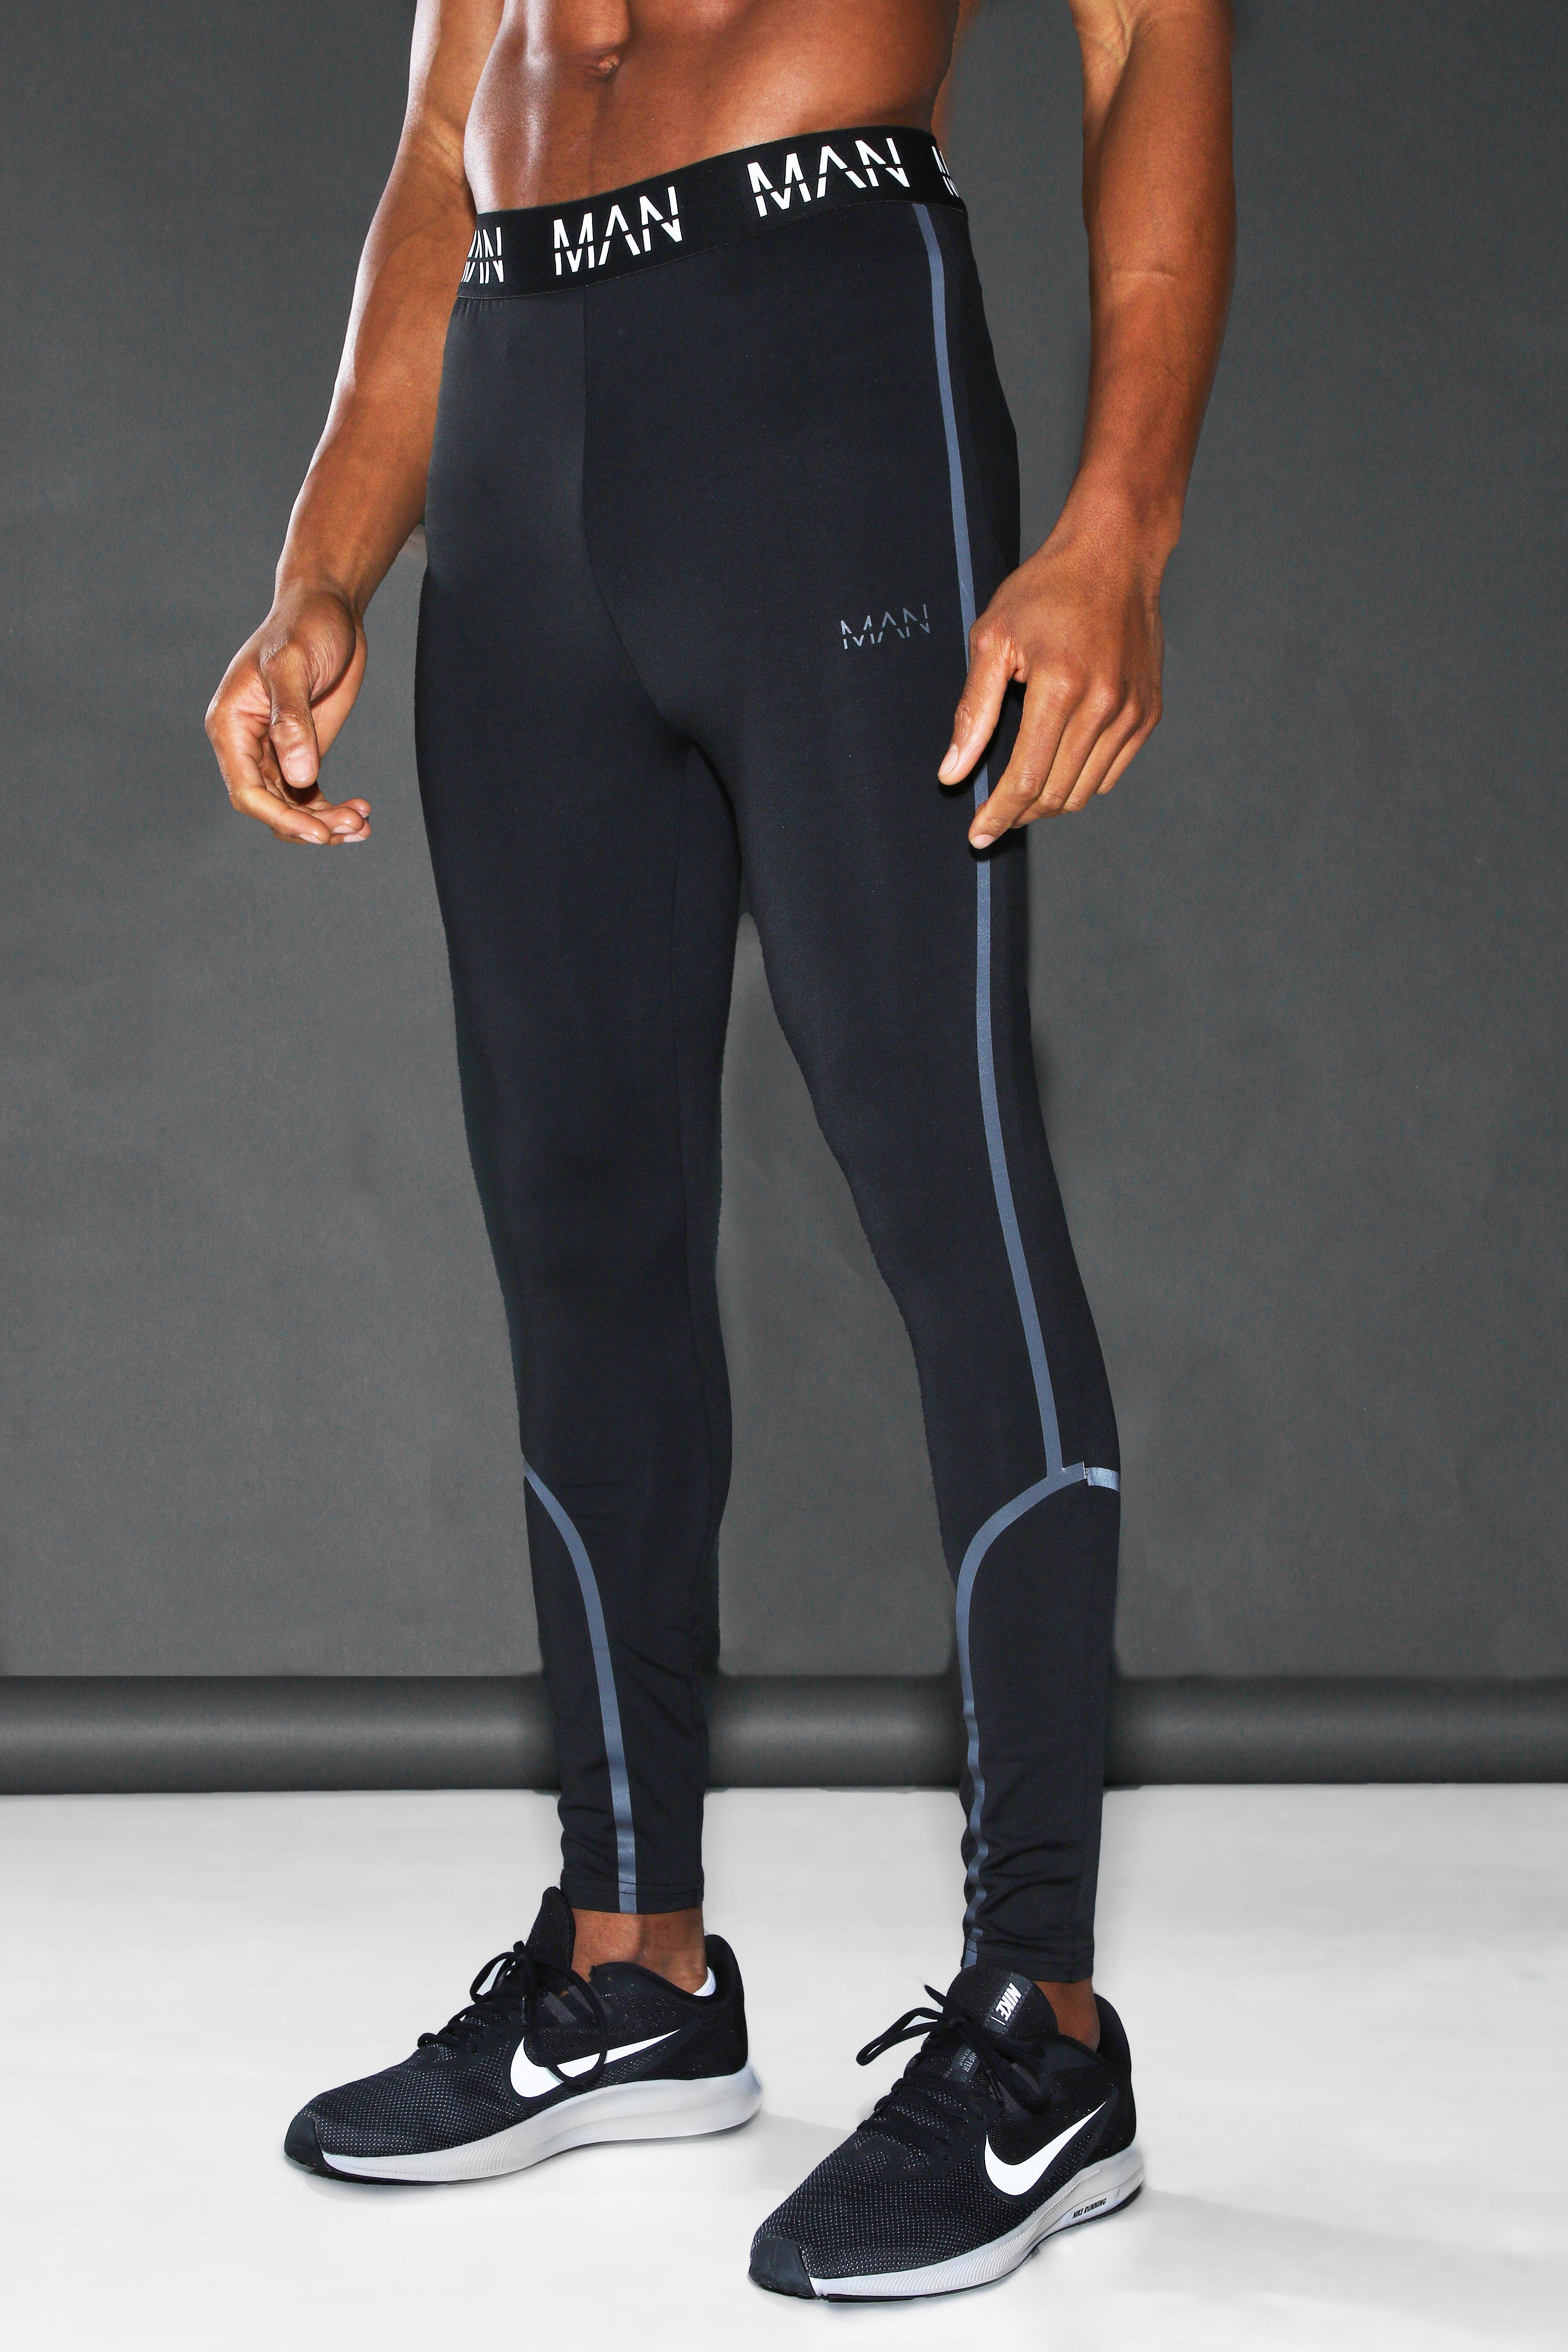 Miinto Homme Sport & Maillots de bain Vêtements de sport Legging Homme Taille: M Training leggings Noir 